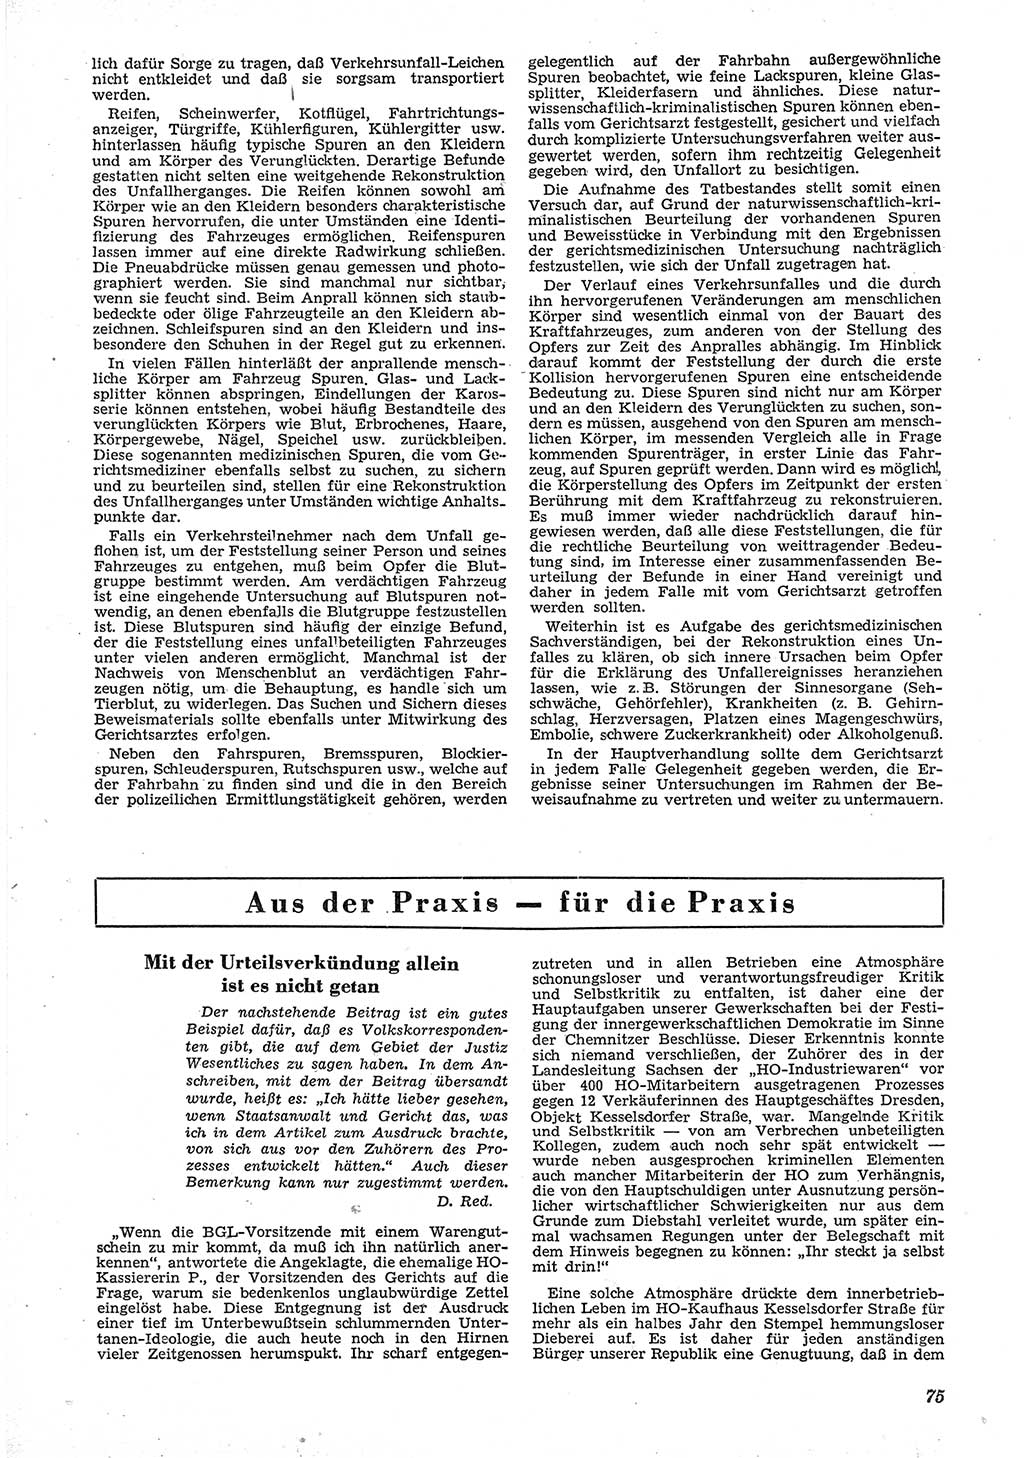 Neue Justiz (NJ), Zeitschrift für Recht und Rechtswissenschaft [Deutsche Demokratische Republik (DDR)], 6. Jahrgang 1952, Seite 75 (NJ DDR 1952, S. 75)